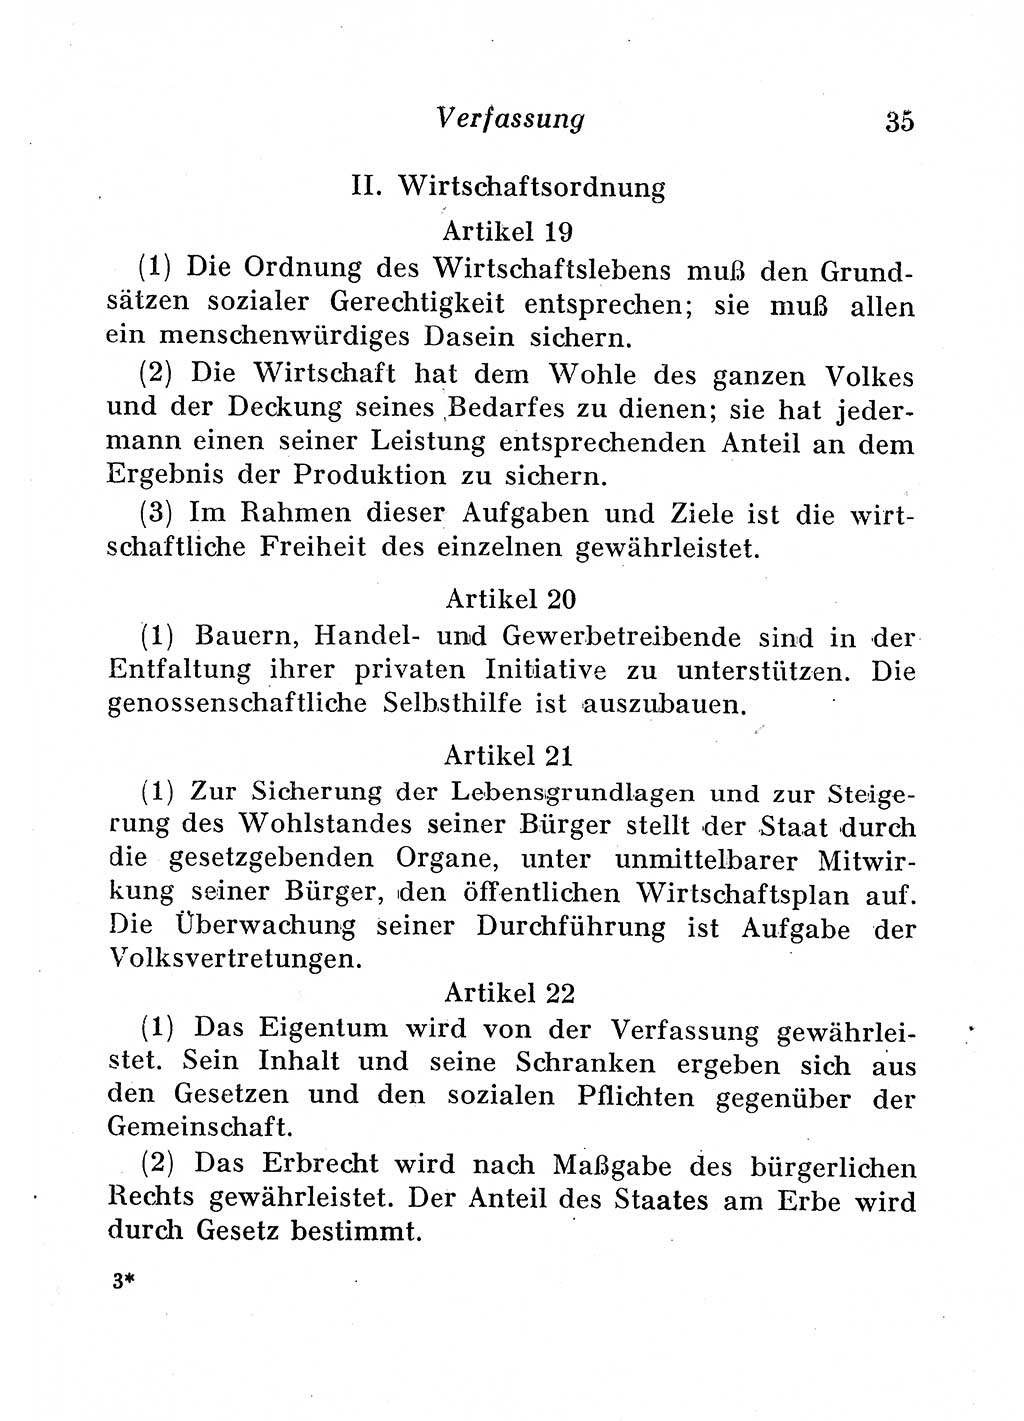 Staats- und verwaltungsrechtliche Gesetze der Deutschen Demokratischen Republik (DDR) 1958, Seite 35 (StVerwR Ges. DDR 1958, S. 35)